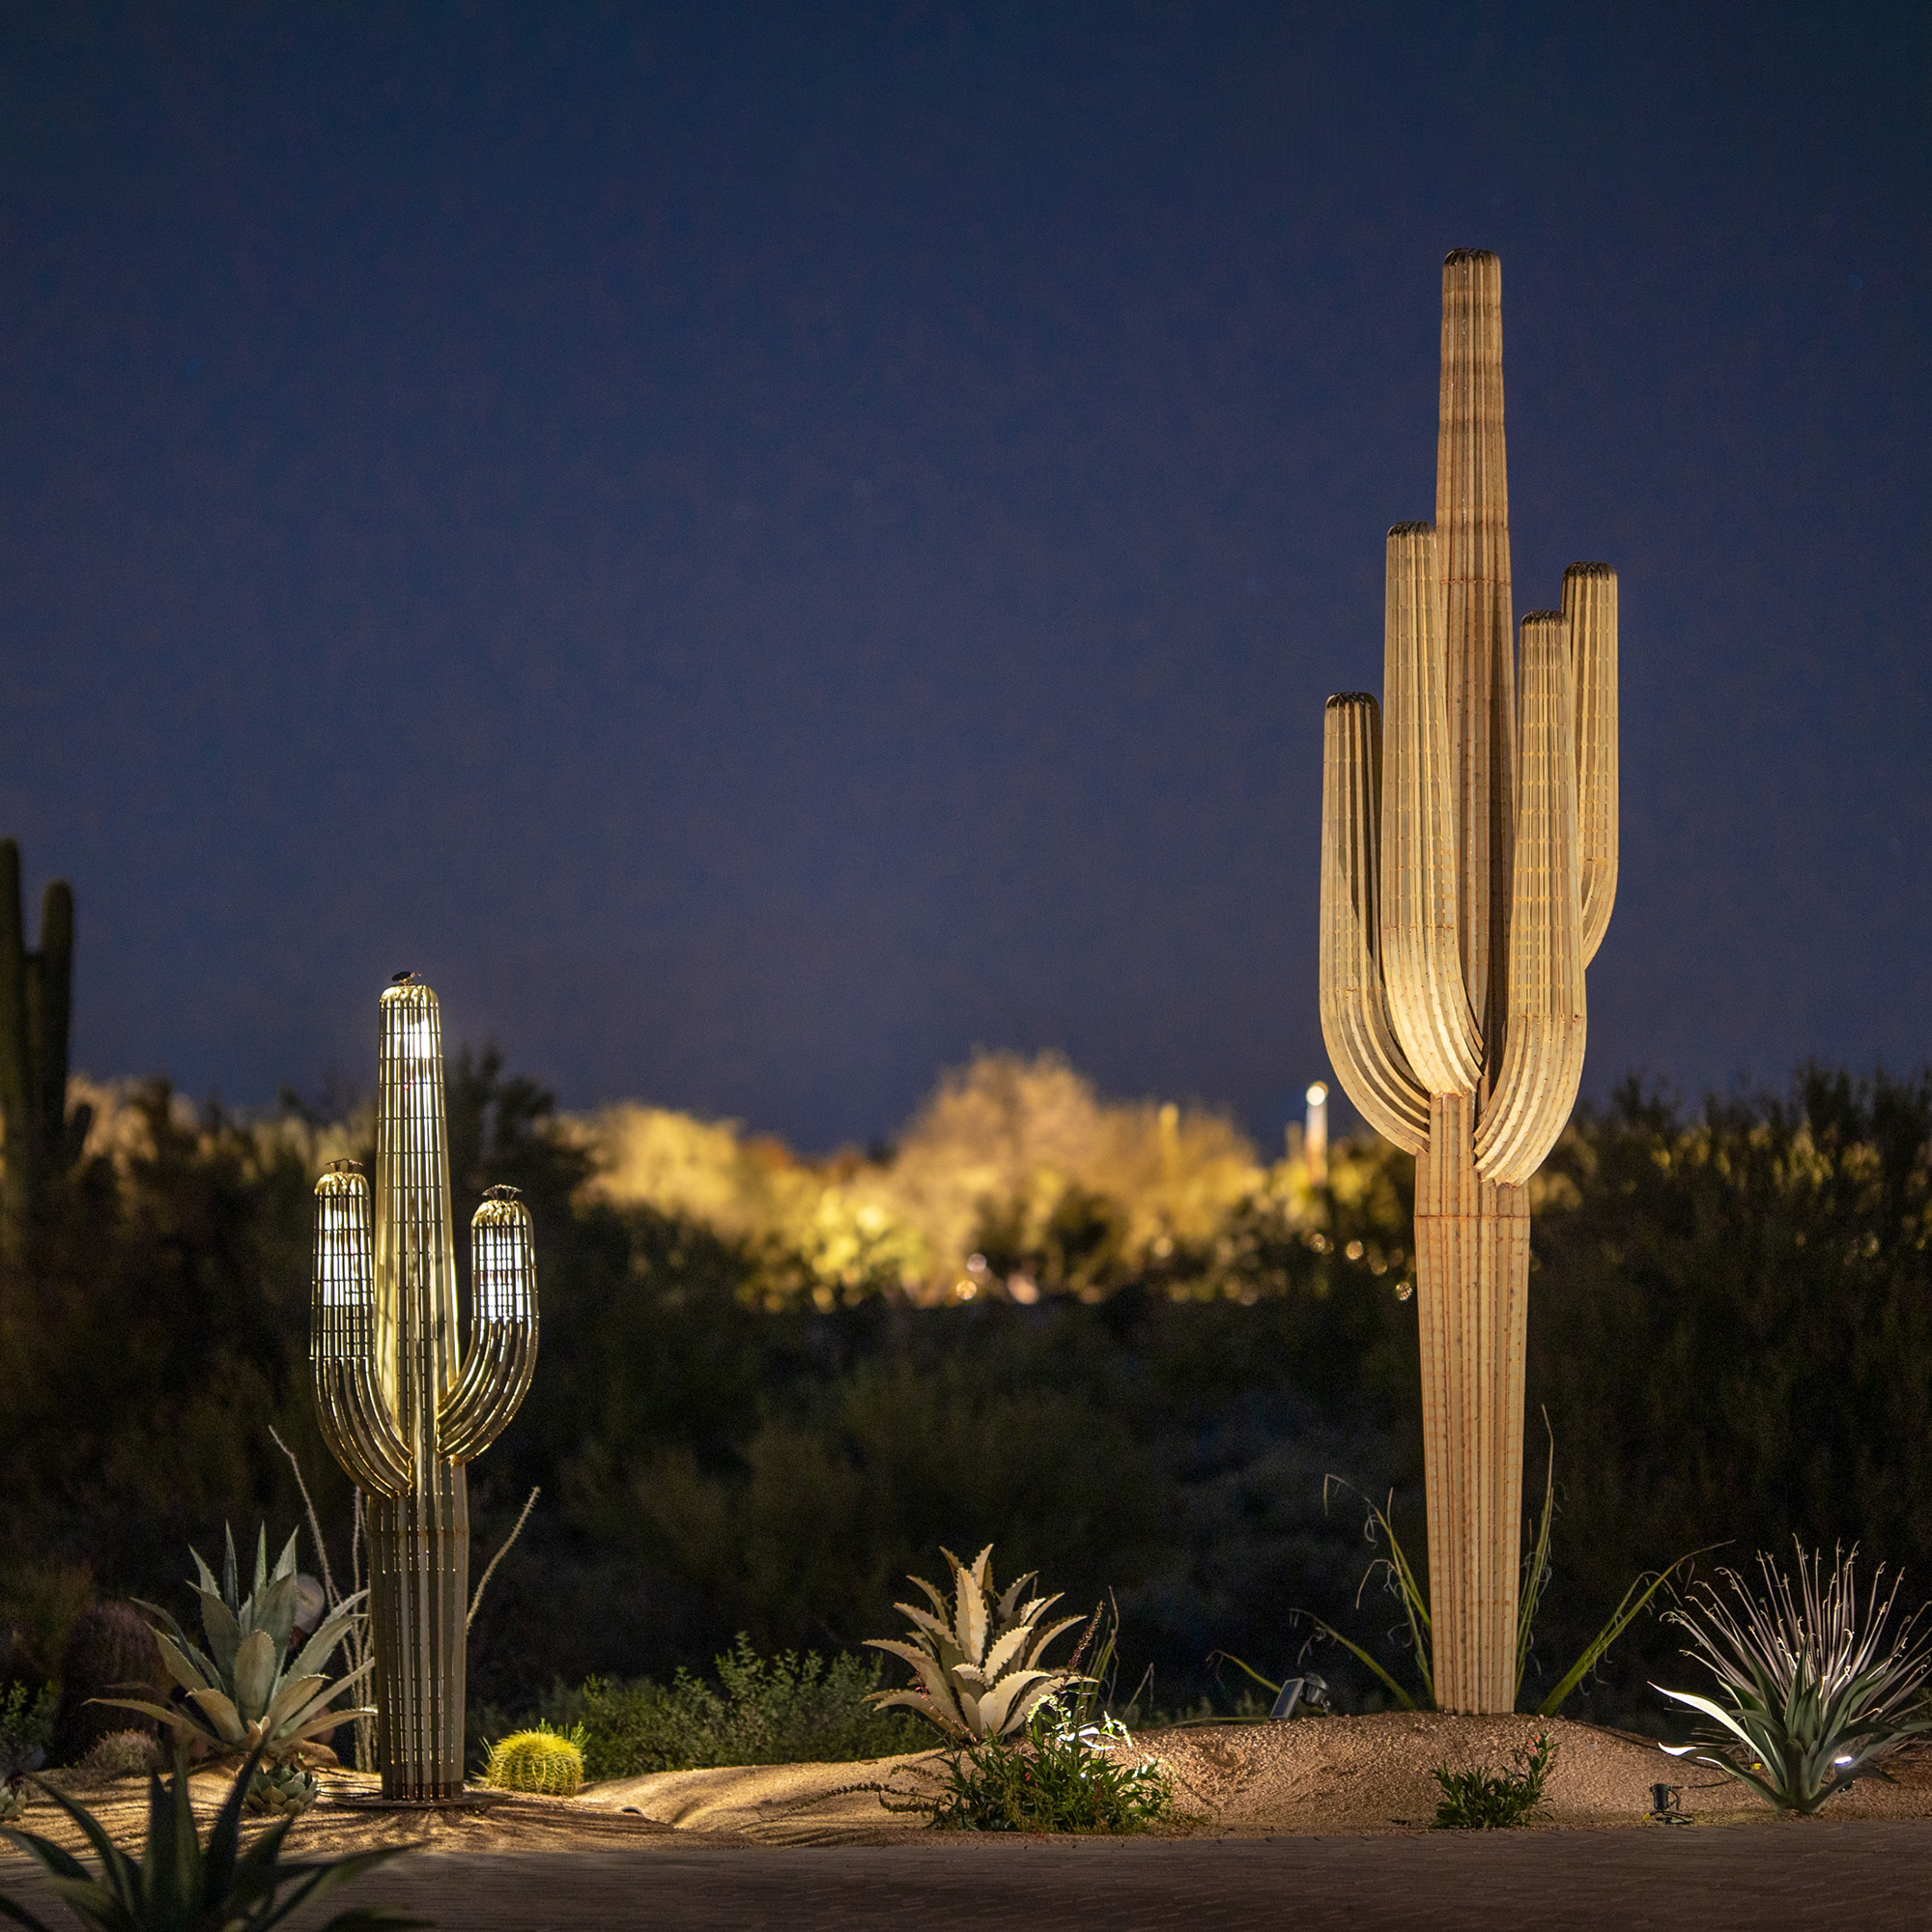 Dual lit saguaros